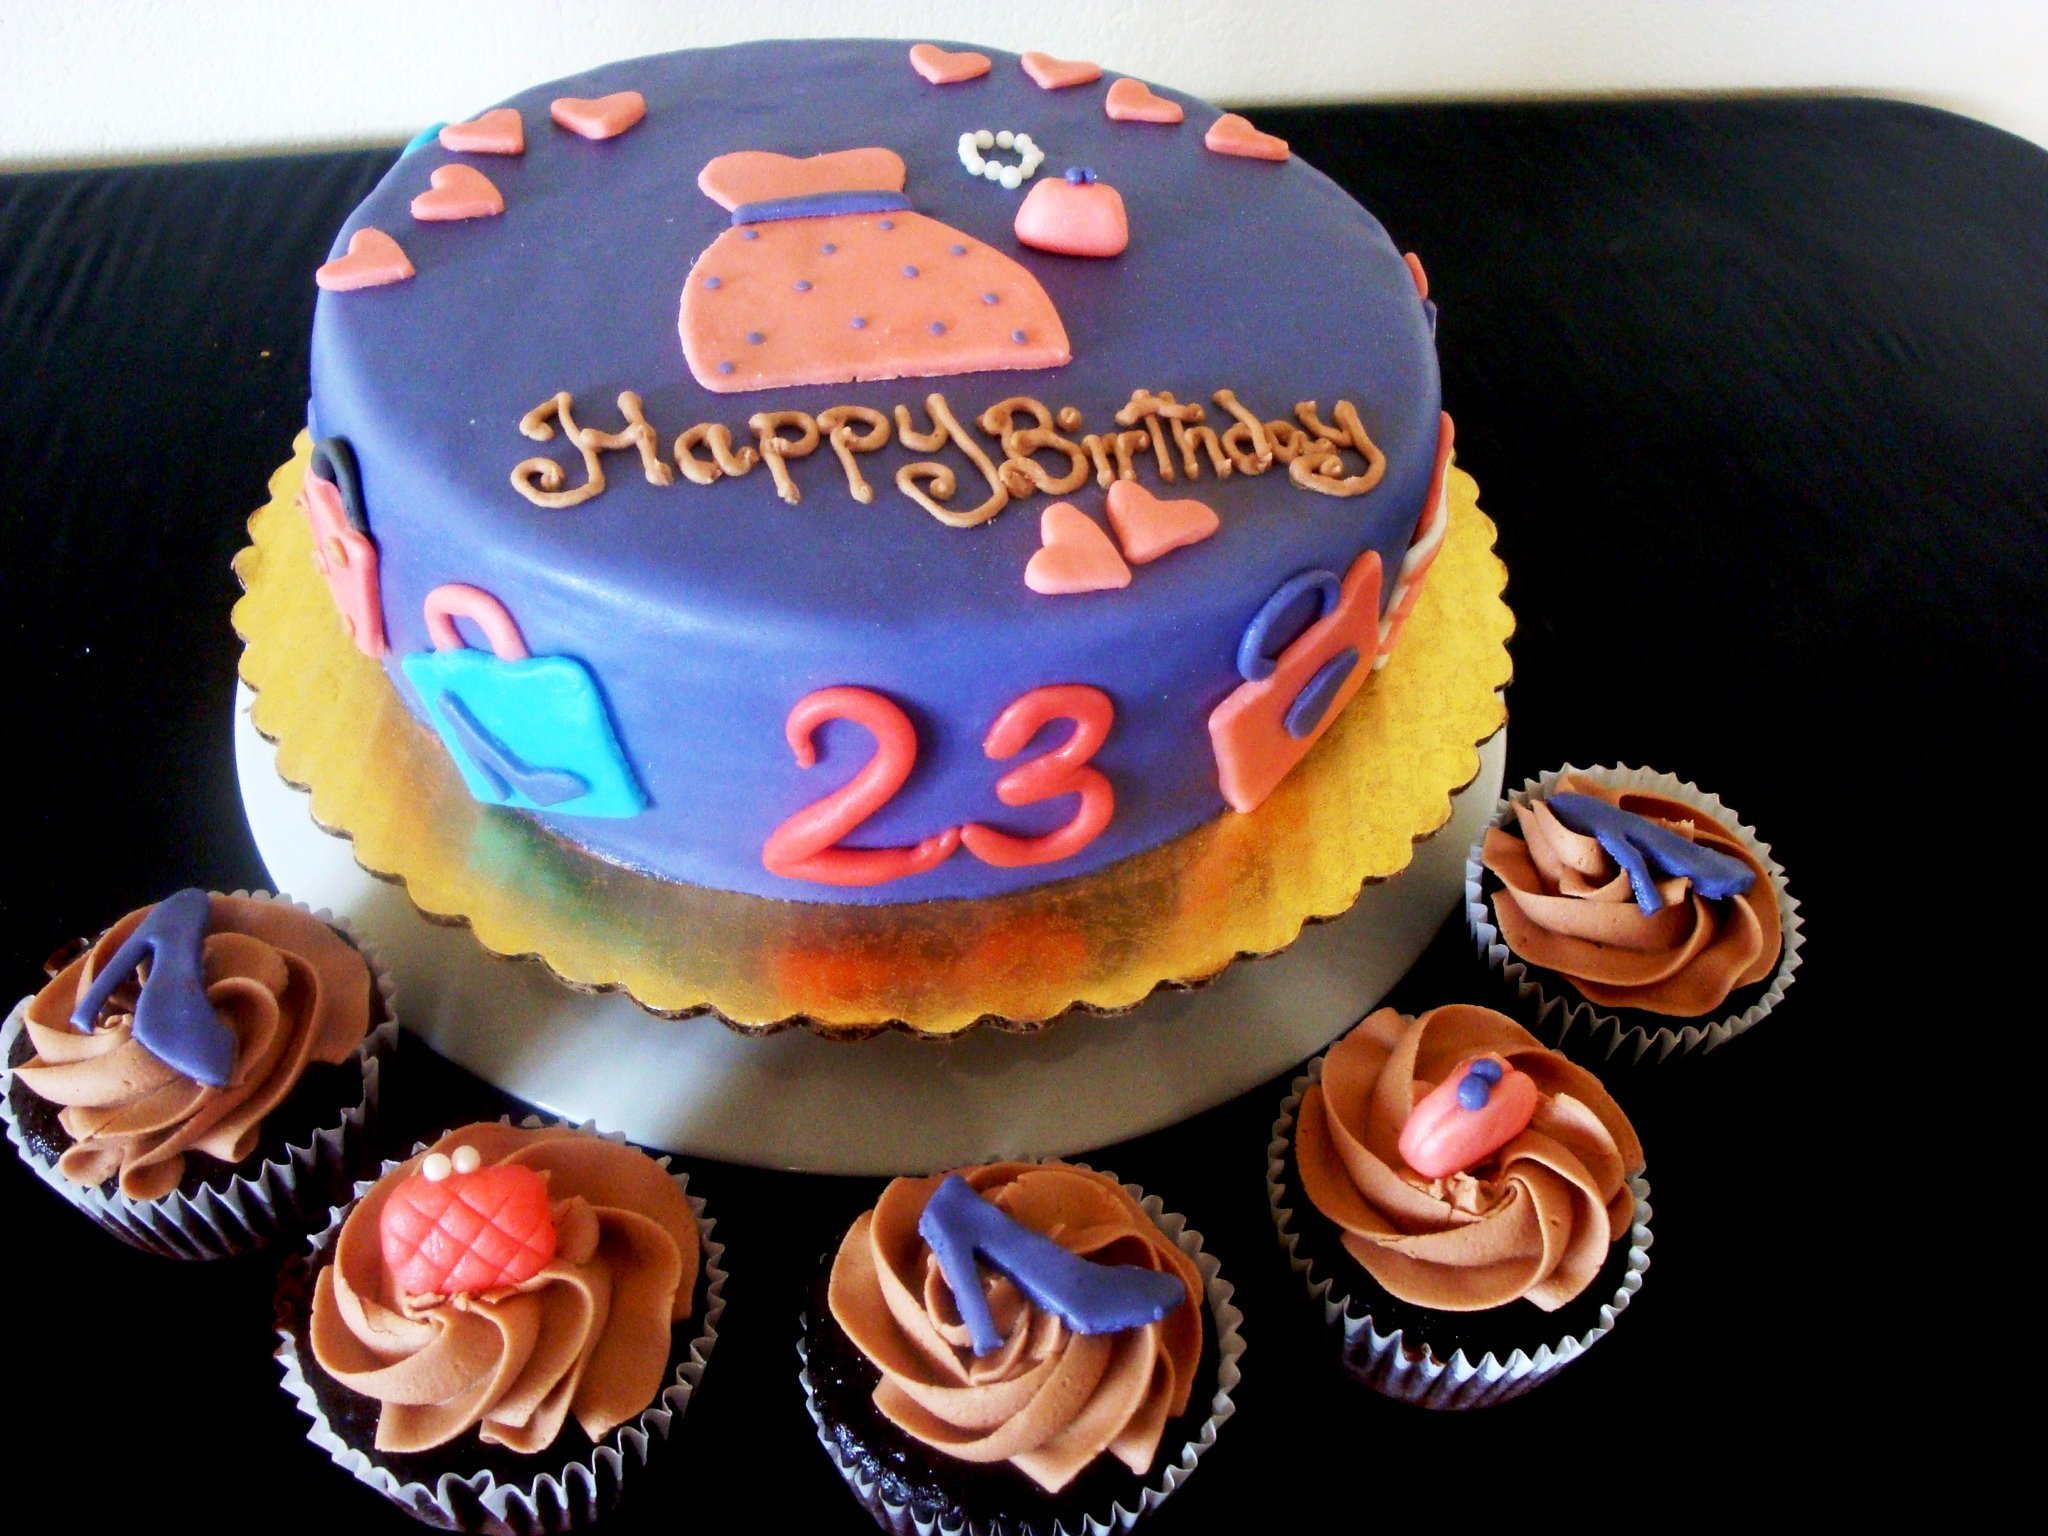 Картинка на торт сыну. Торт на десятилетие мальчику. С днем рождения 23. Торт на день рождения парню 23. С днём рождения 23 года.